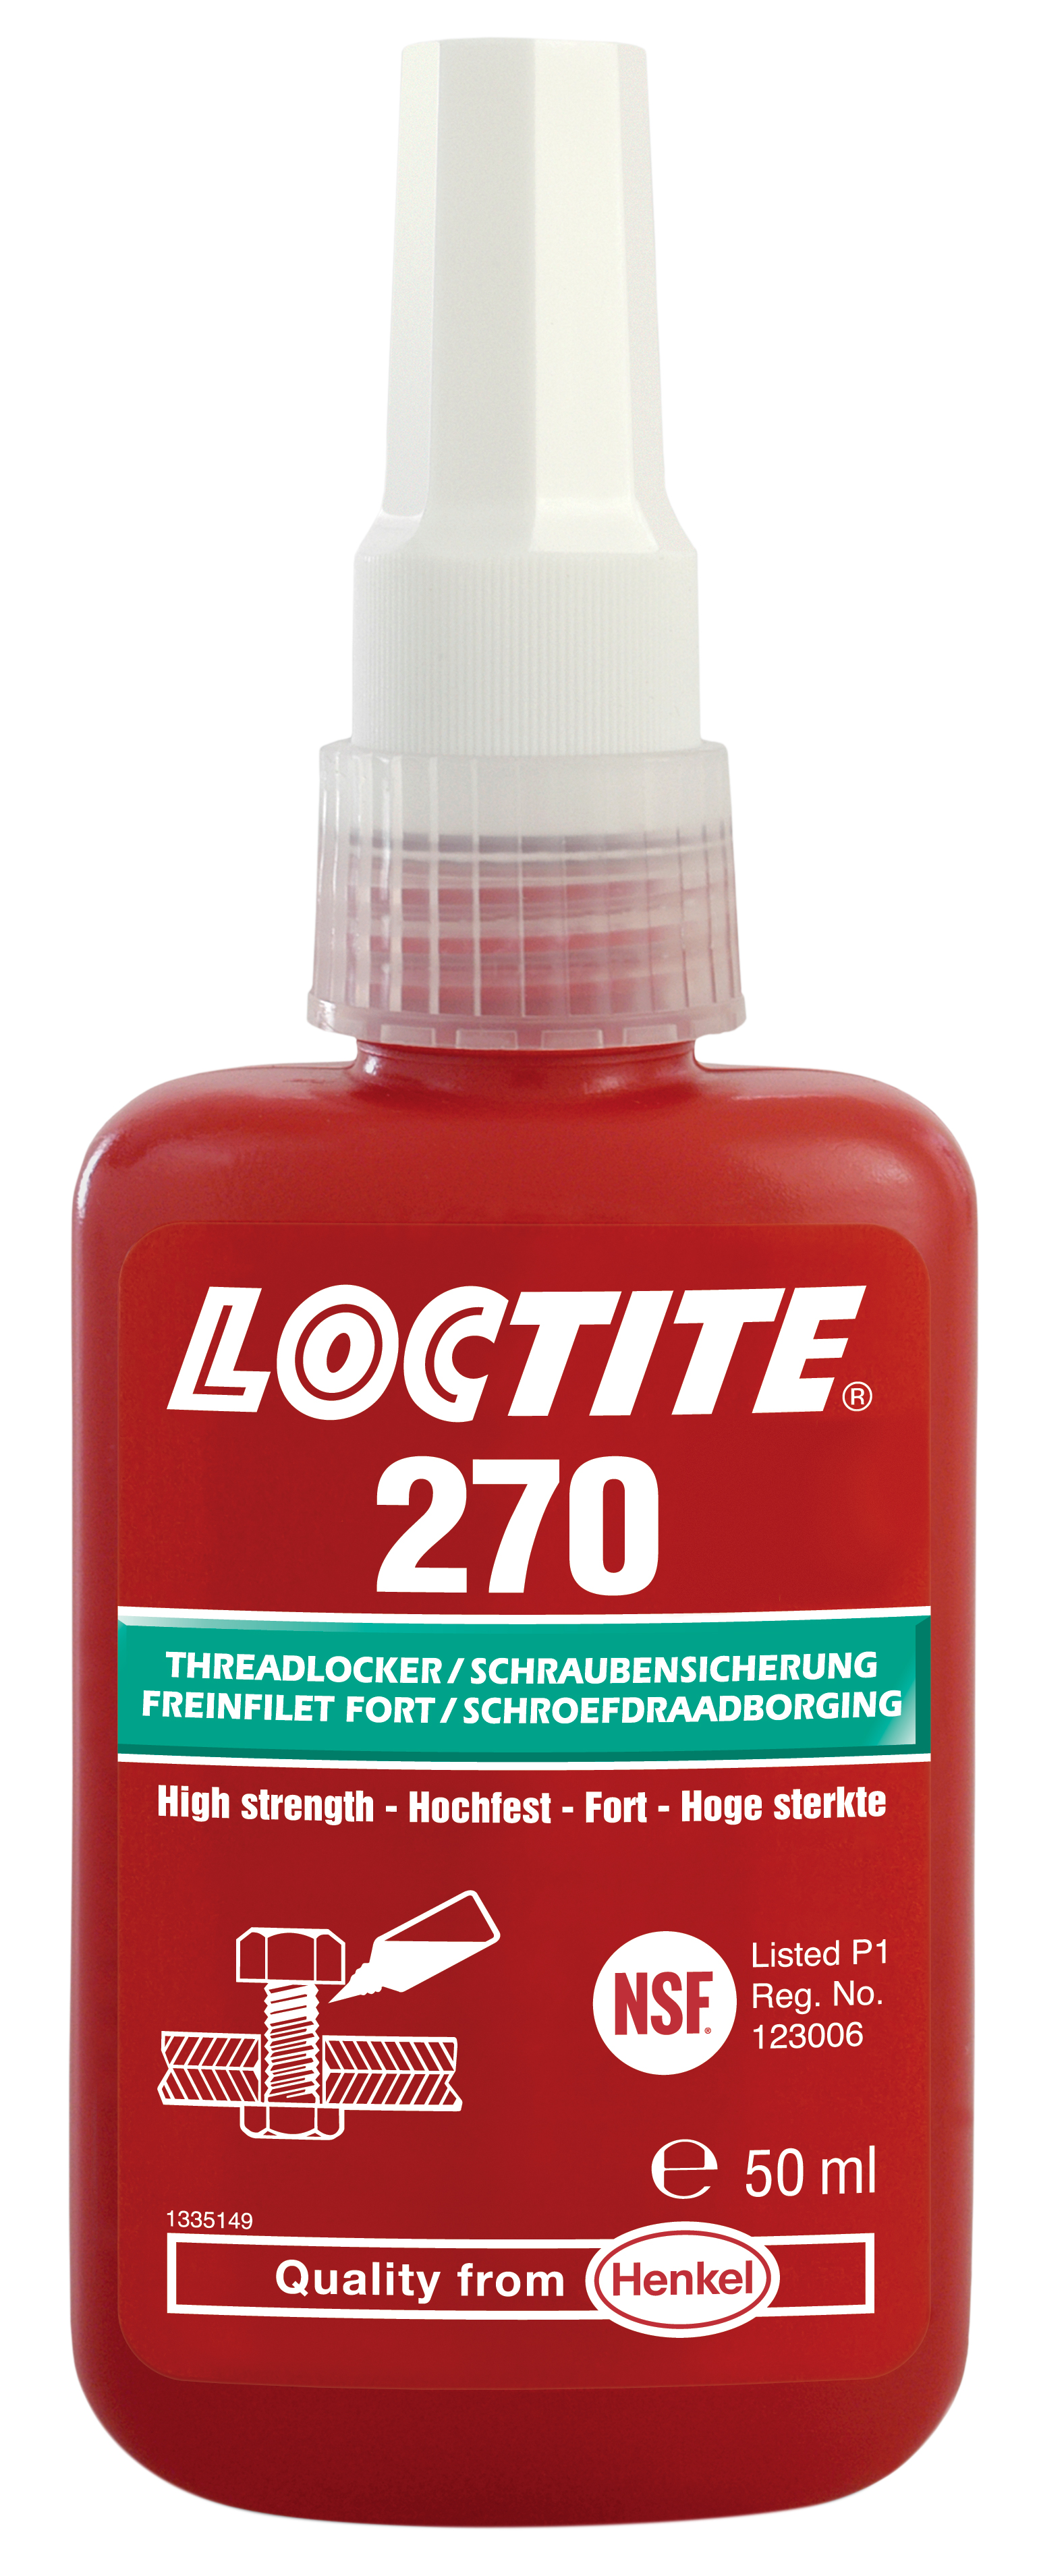 Kit Super Glue Loctite 406 avec activateur Loctite 770 - Liquide -  Bouteille - 20g - Transparent